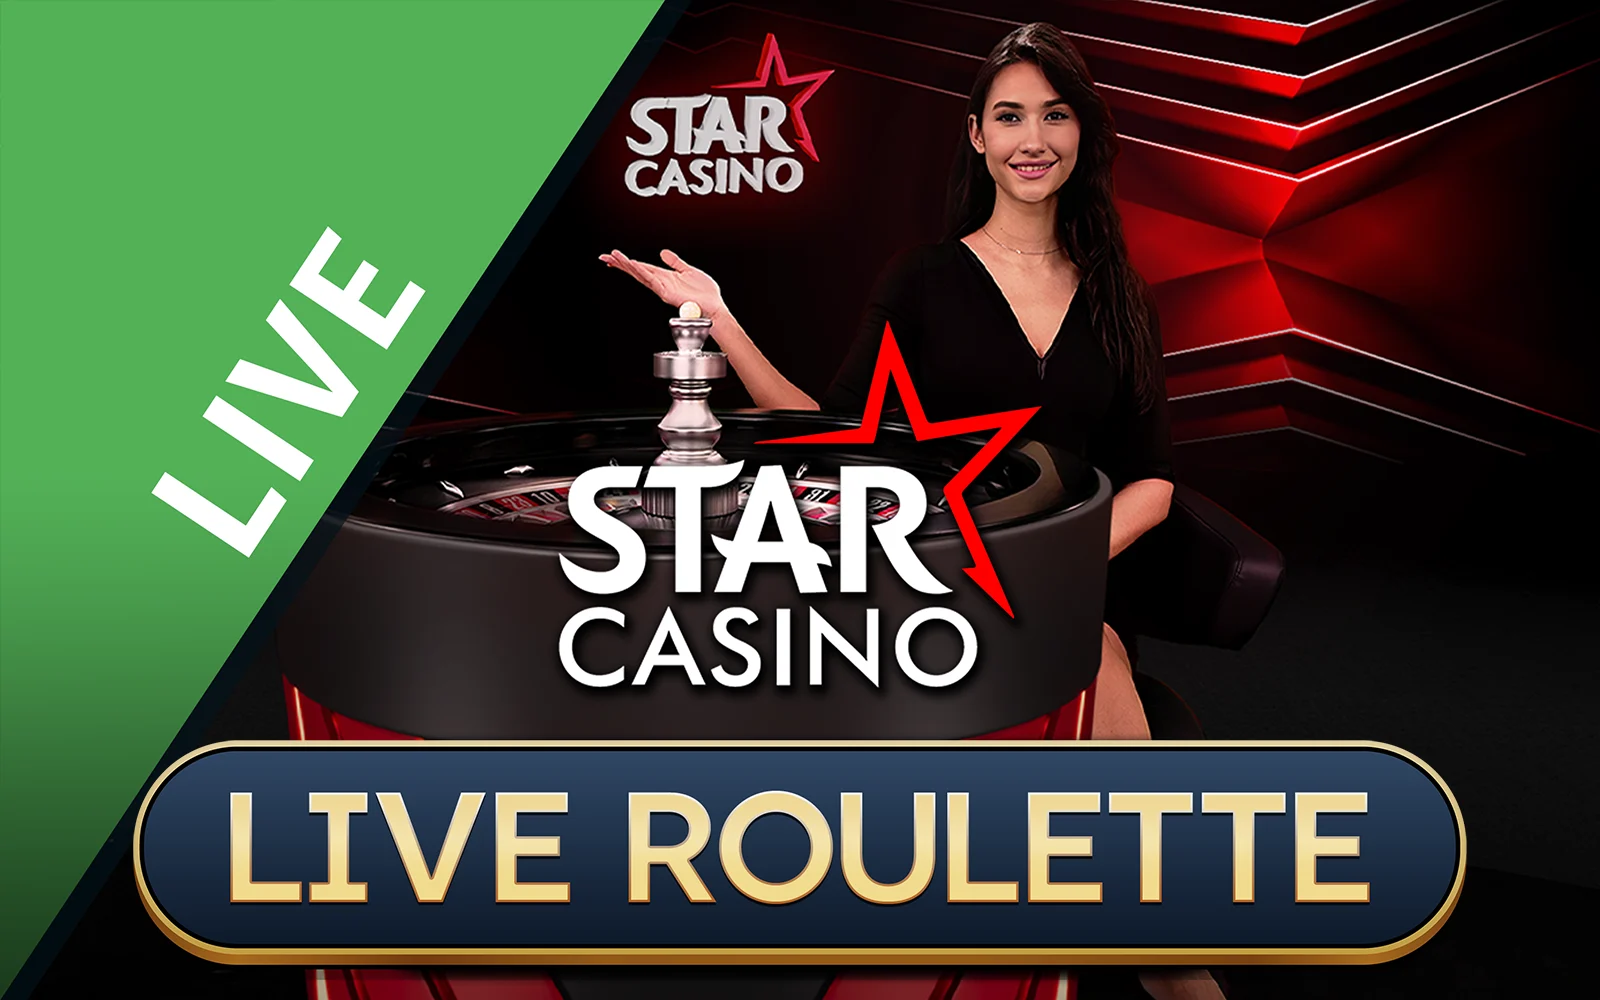 Gioca a Starcasino Roulette sul casino online Starcasino.be